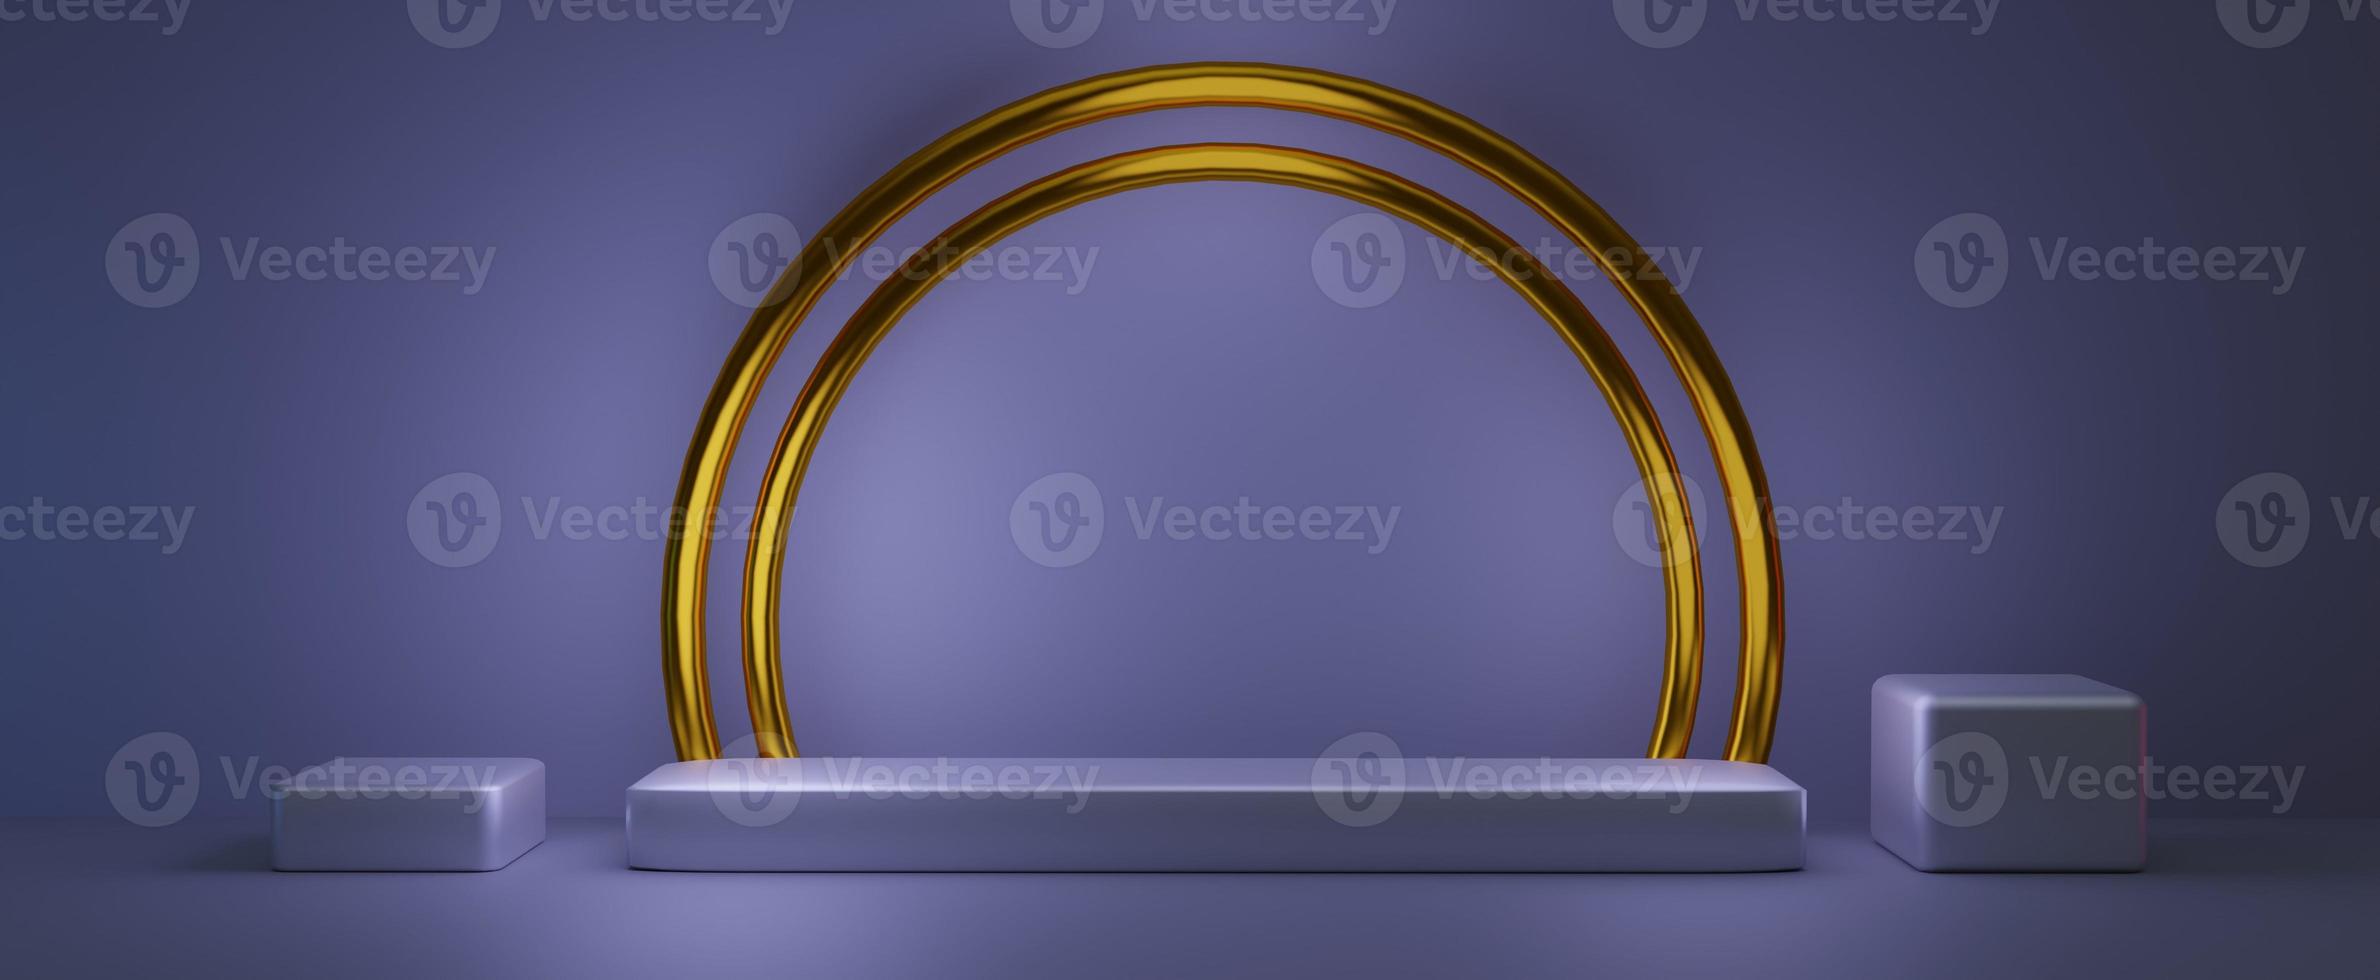 rechthoekig podium met gouden cirkels. leeg voetstuk voor 3d renderpresentatie in zachtblauwe kleur en gele halfronde frames. elegante realistische scène met creatieve geometrische decoraties foto